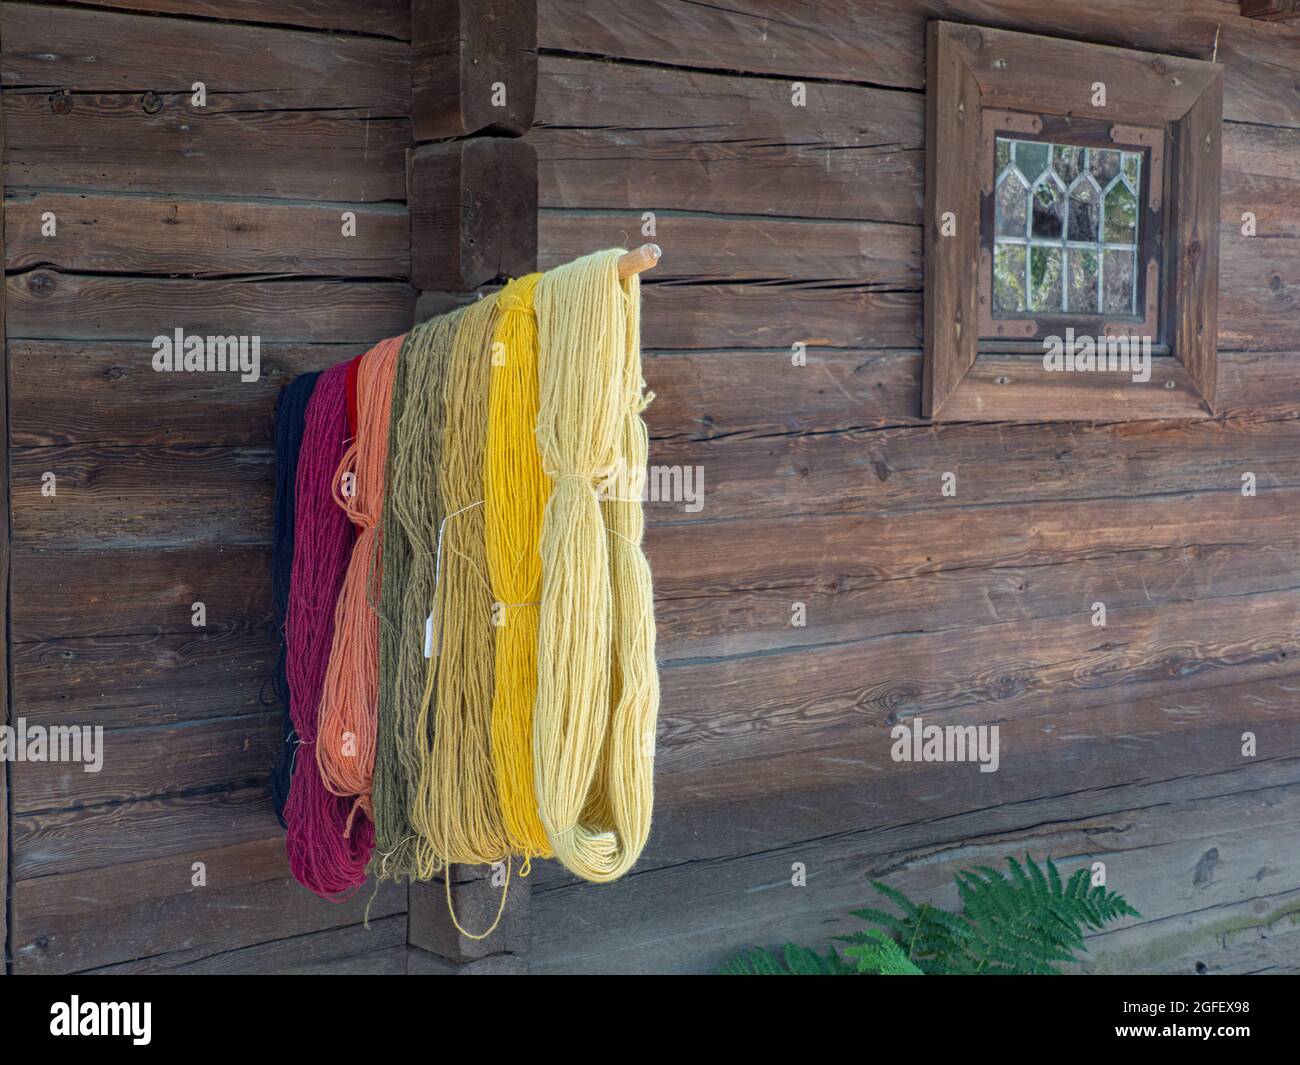 Hilados teñidos caseros colgados fuera de una antigua casa de madera. Foto de stock